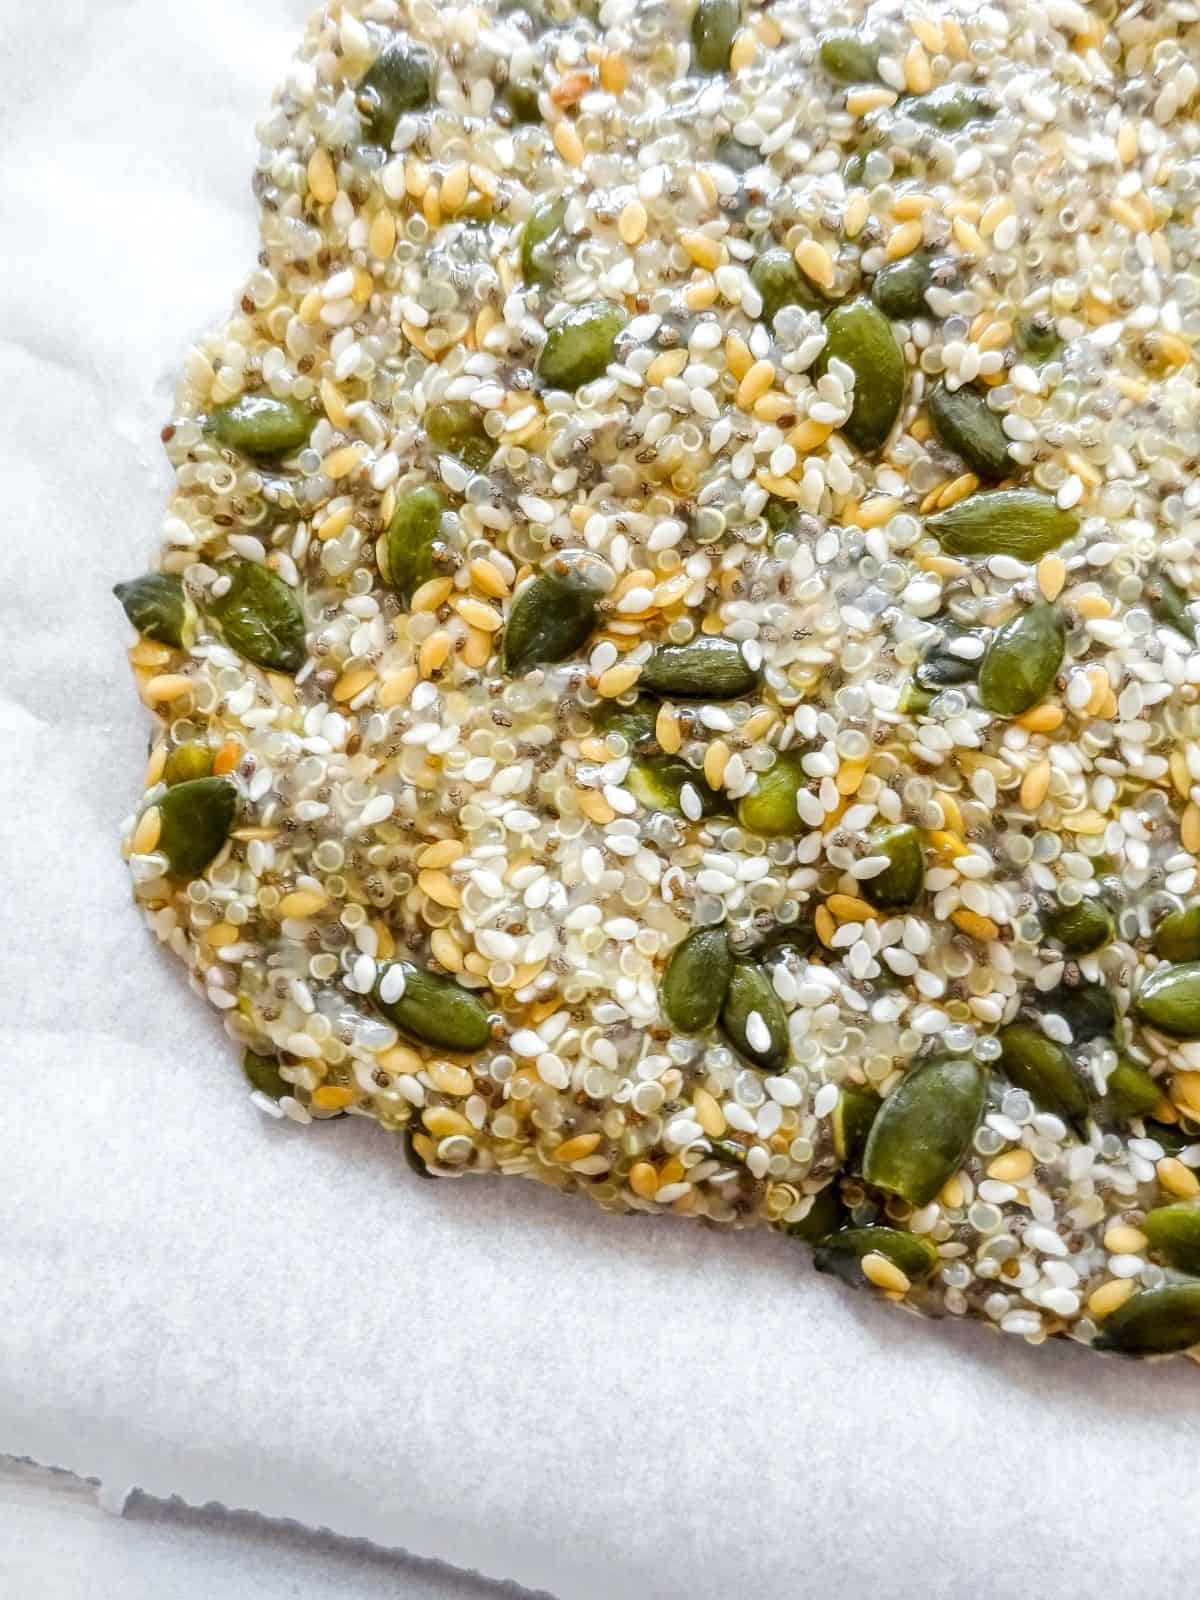 quinoa cracker mixture on a baking tray.